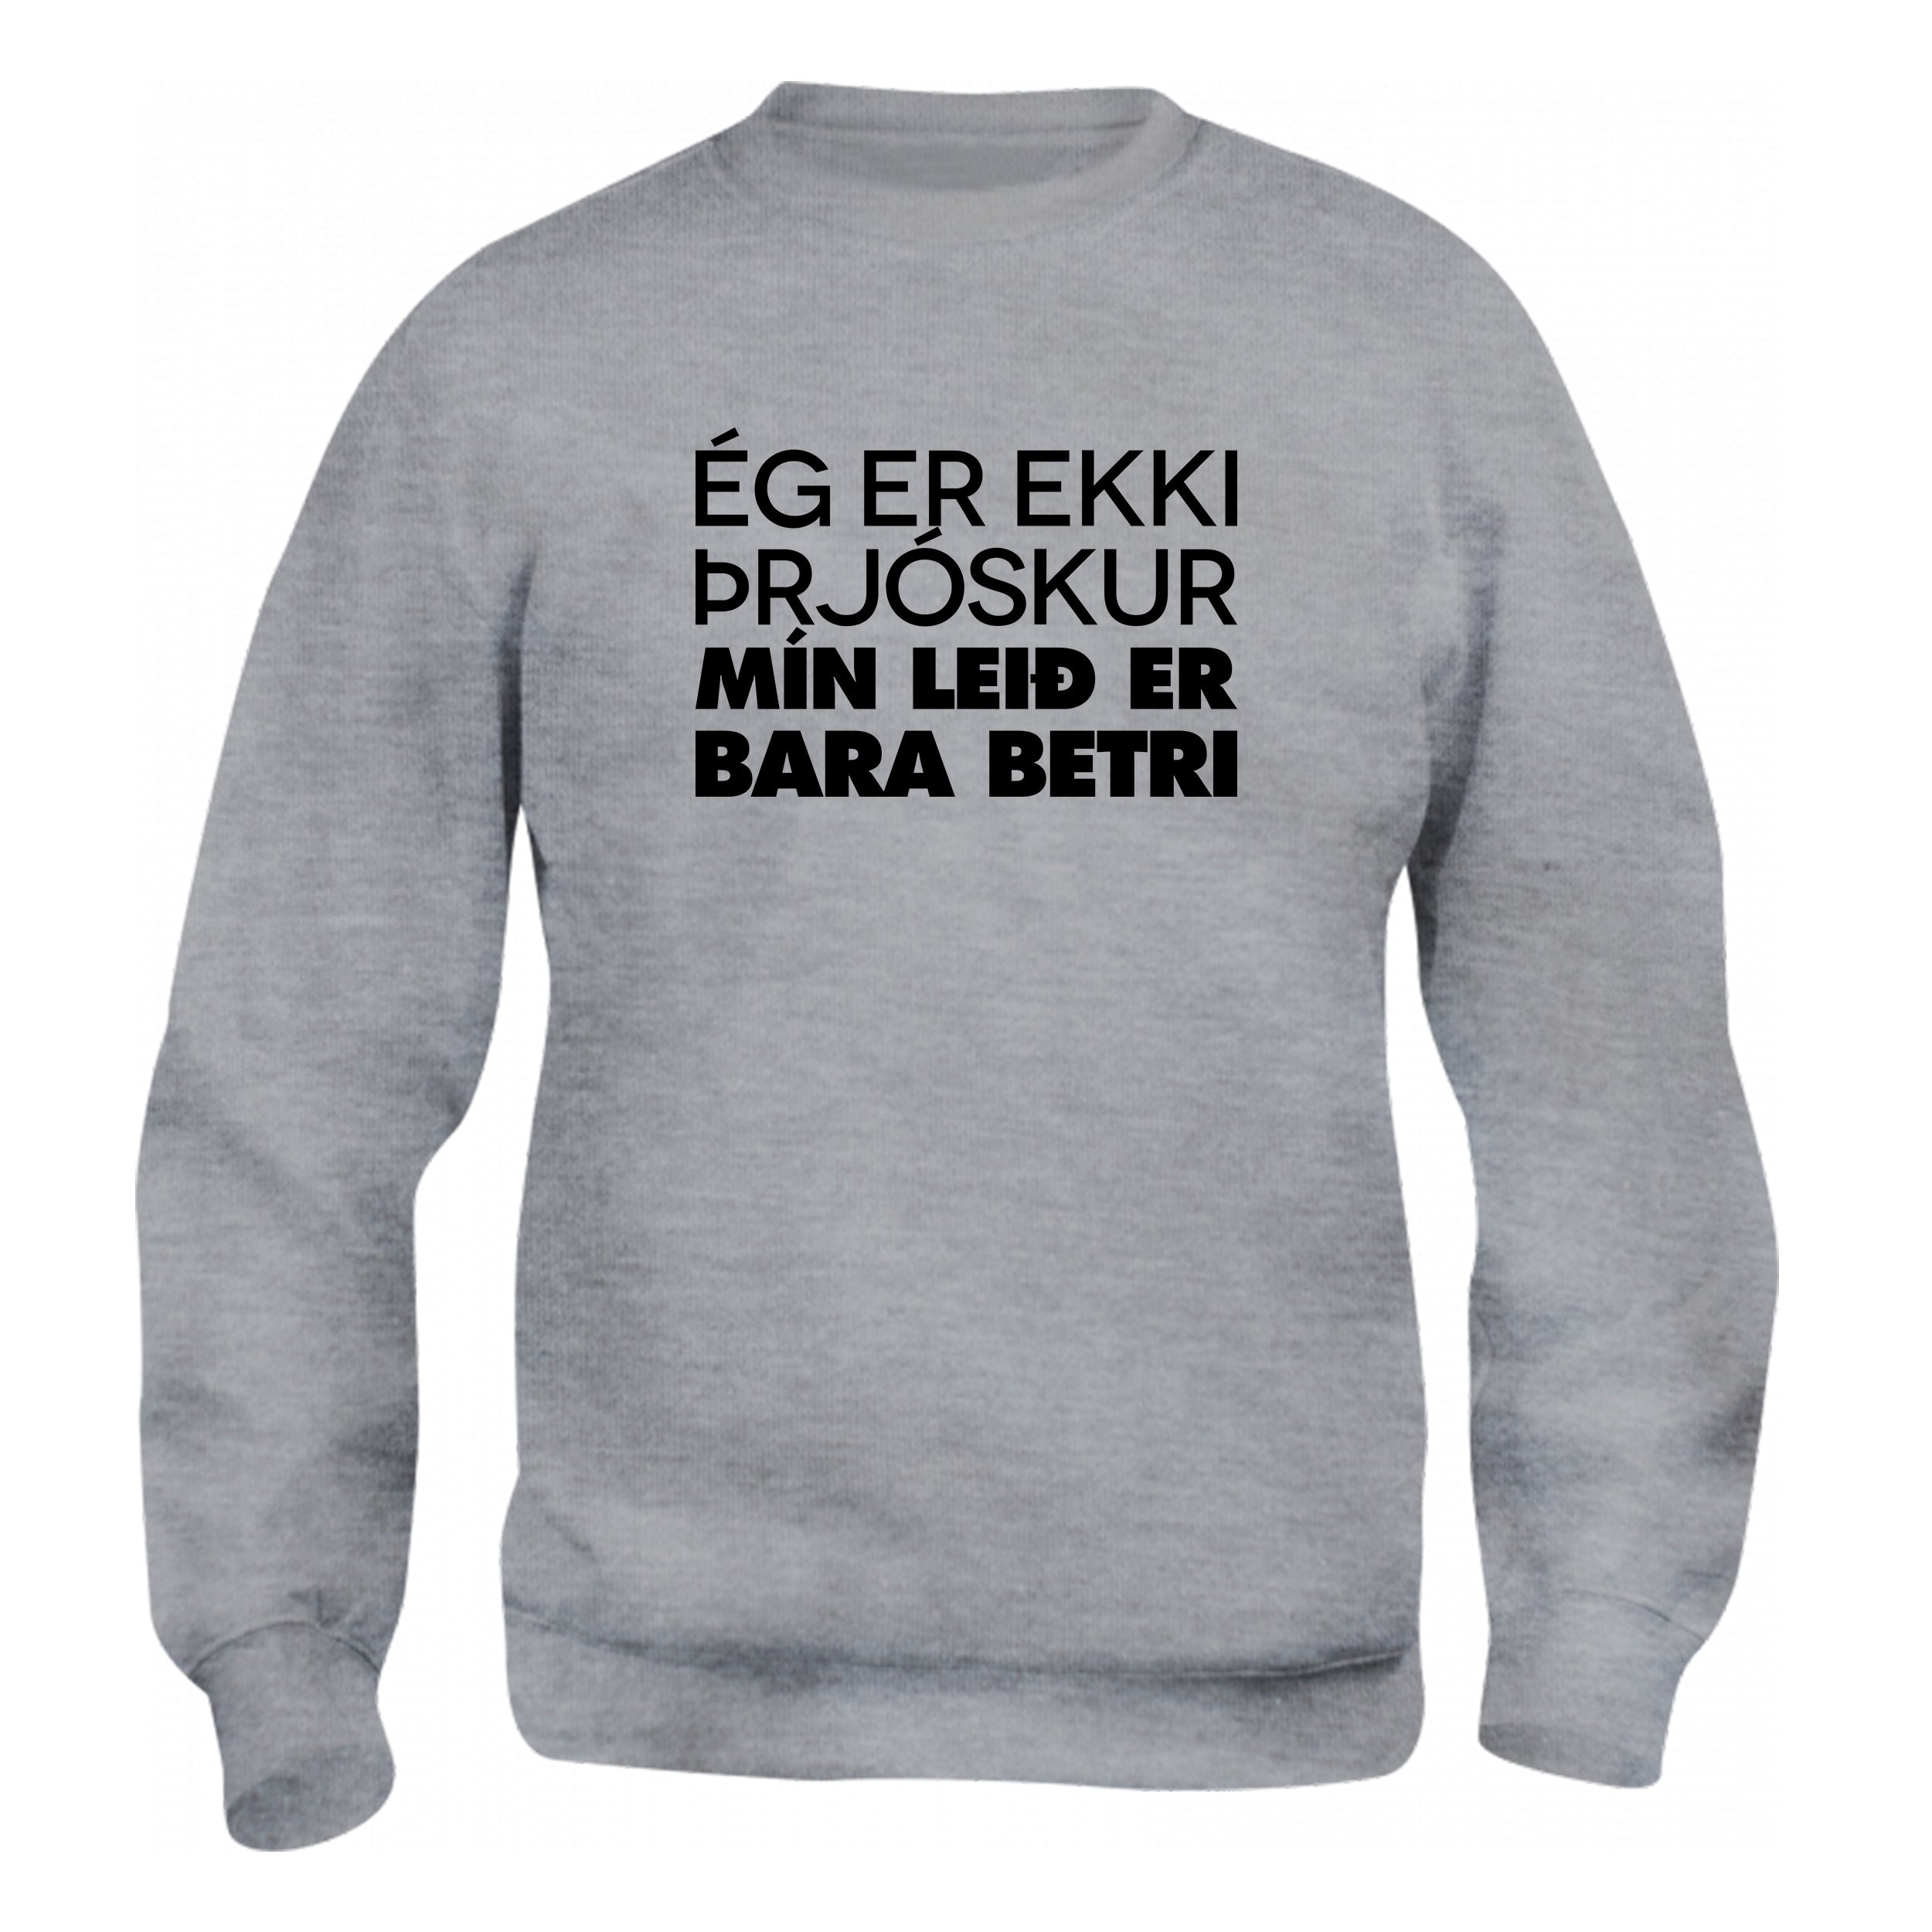 ÉG ER EKKI ÞRJÓSKUR - Peysa - Grá